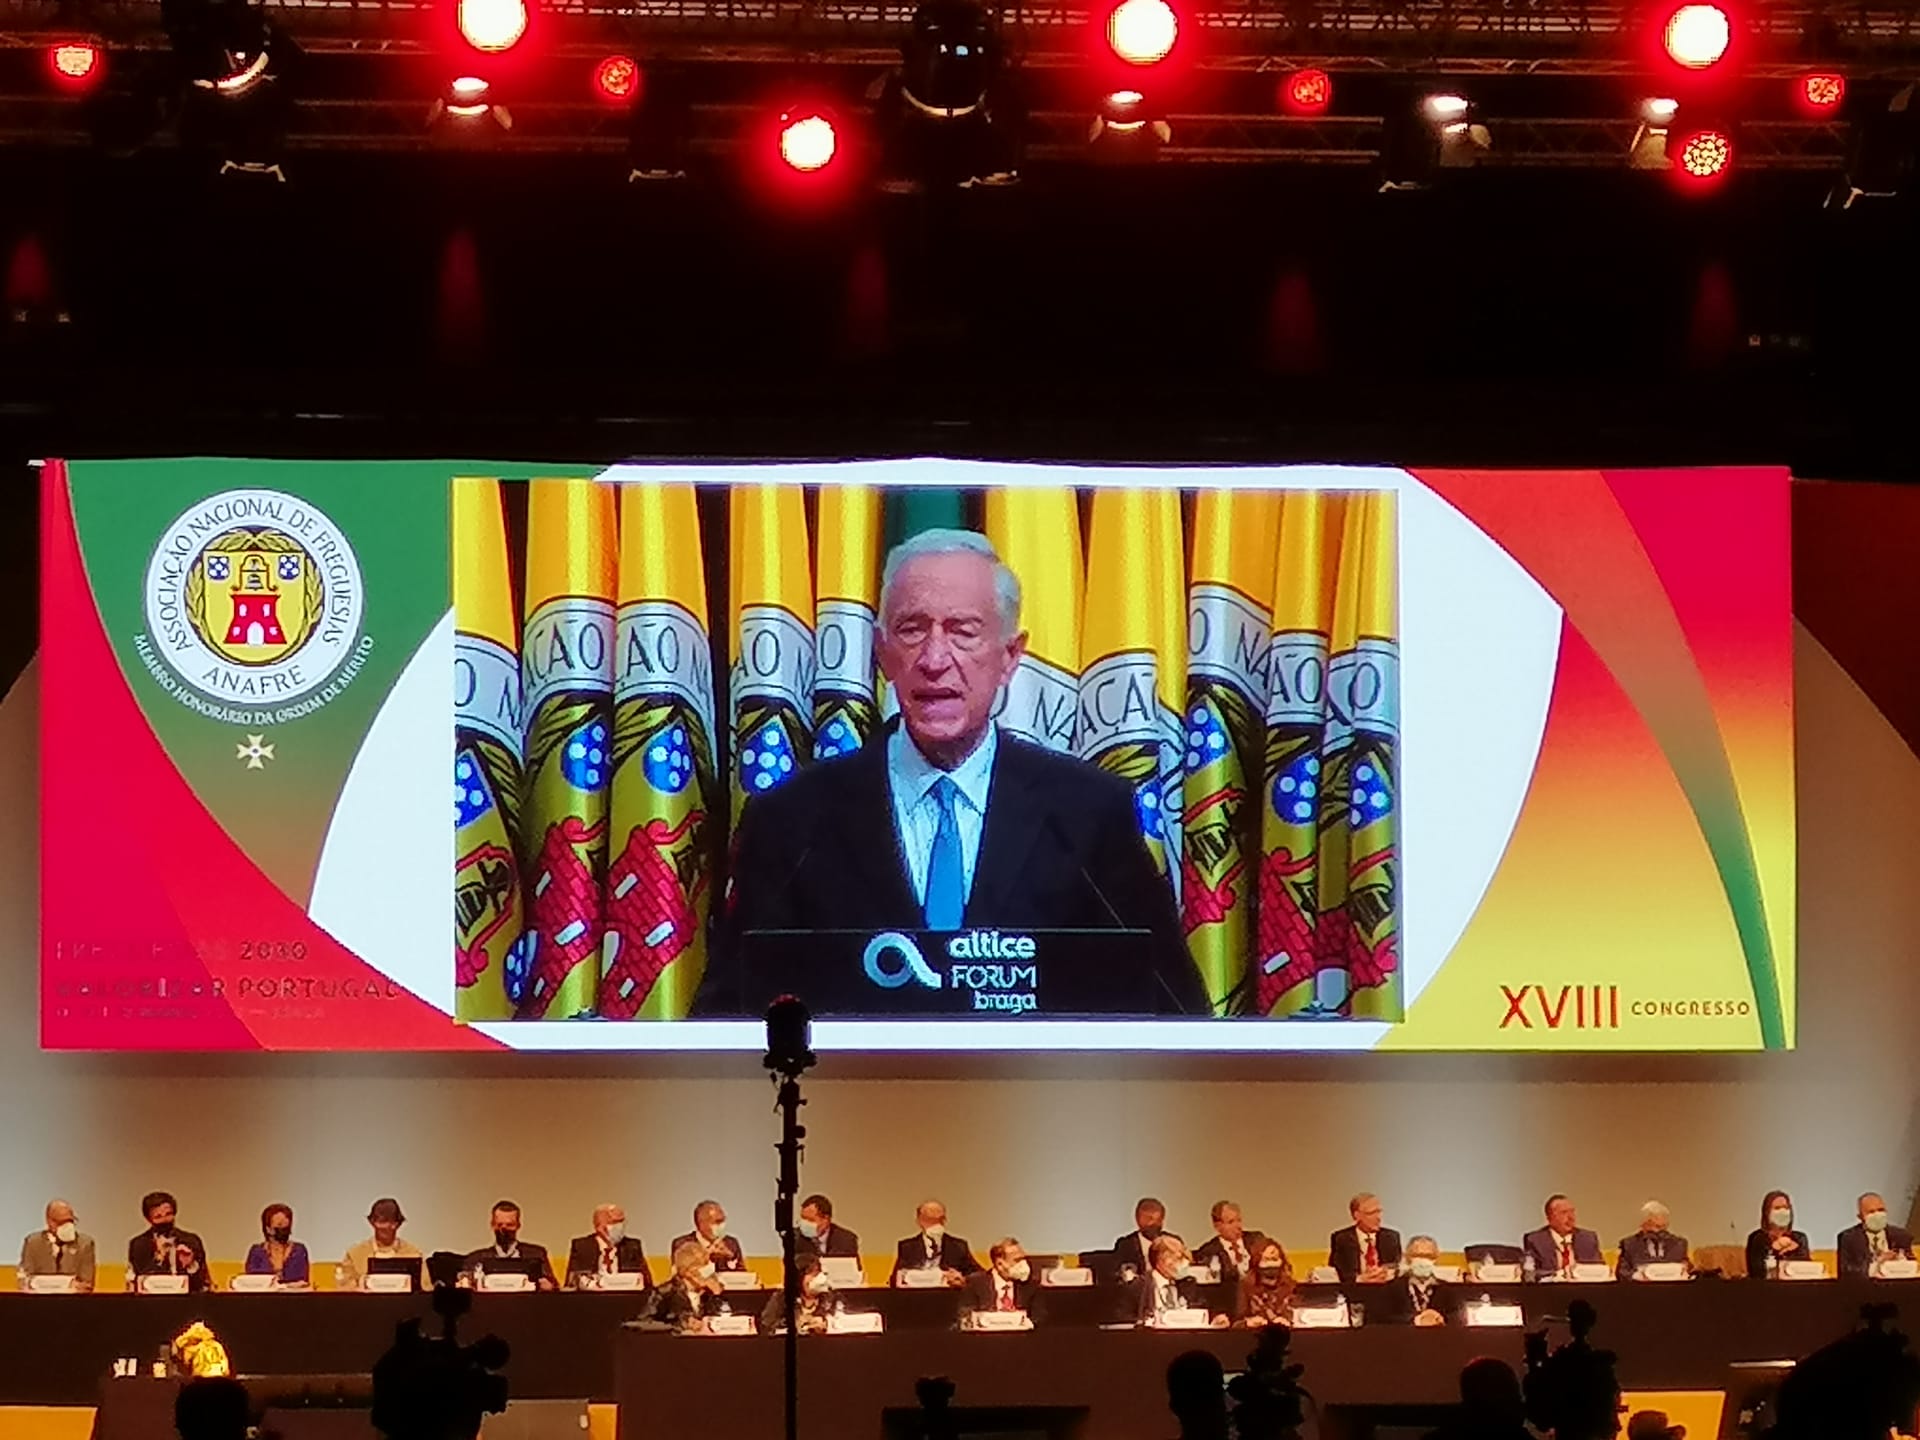 XVIII Congresso da Anafre – Freguesias 2030 – Valorizar Portugal. A Freguesia de Fanhões está Presente defendendo os interesses do nosso território!